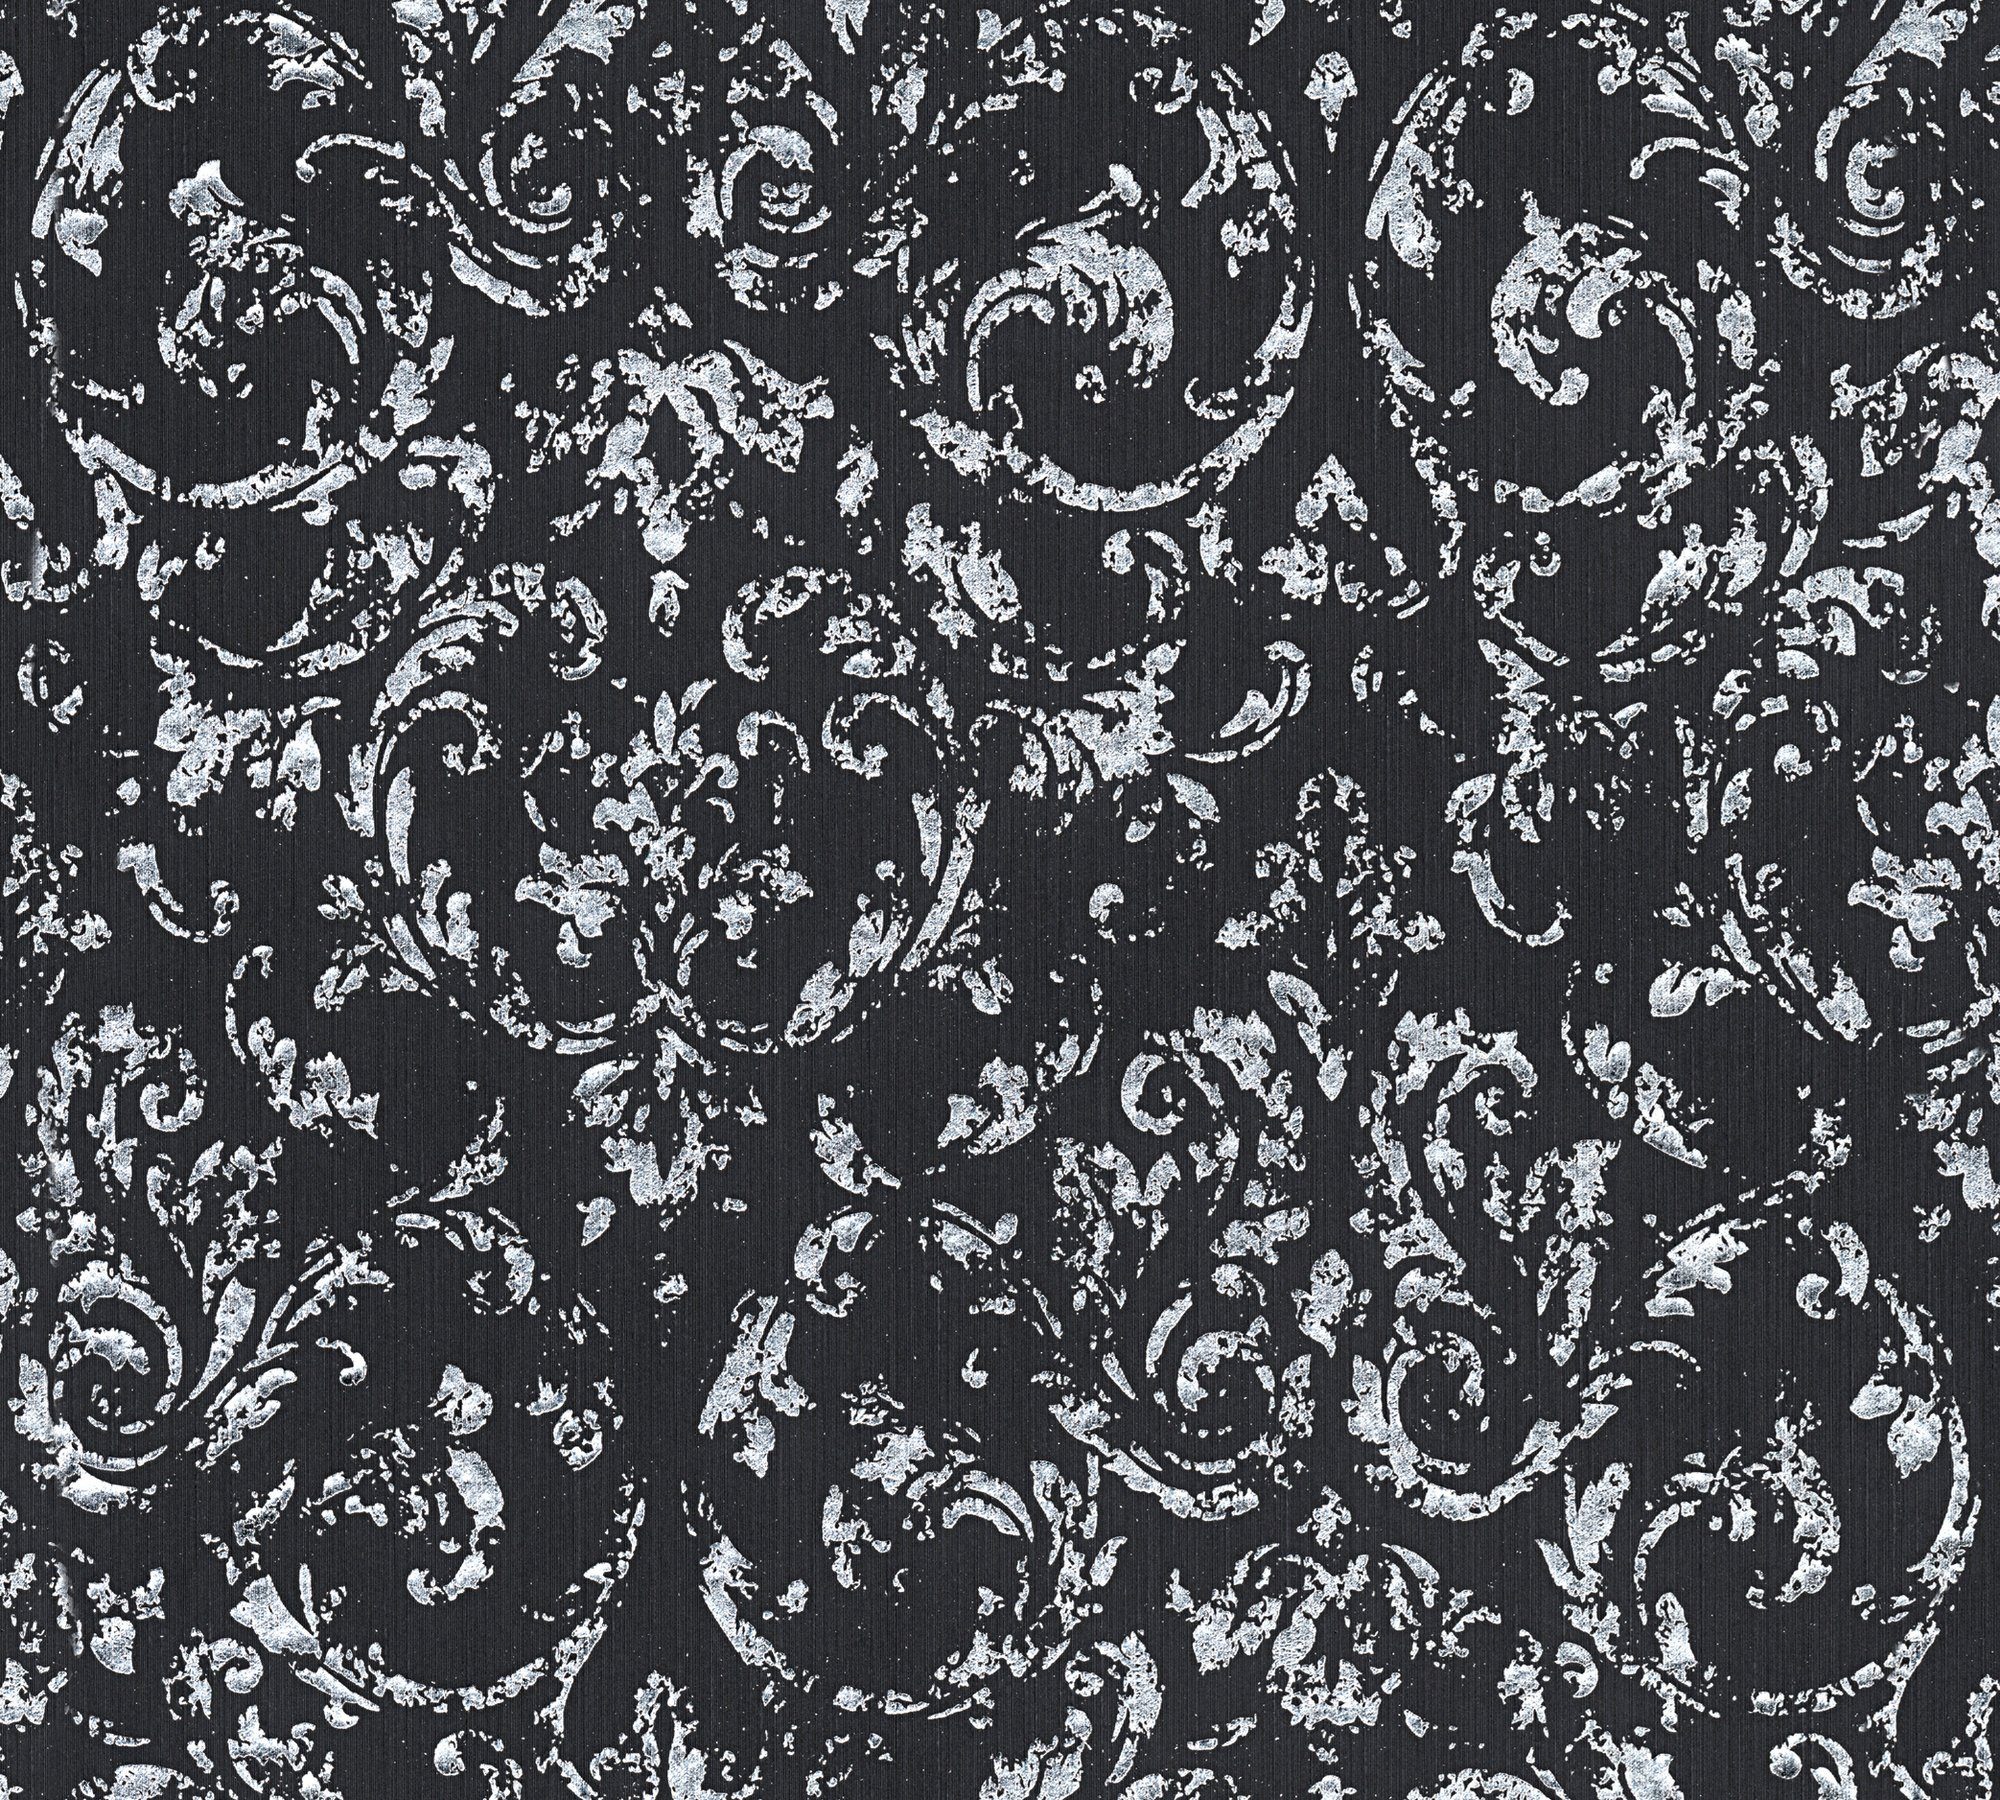 Silk, Paper Tapete schwarz/silberfarben Ornament Metallic matt, Barock Barock, A.S. Architects Création Textiltapete glänzend, samtig,